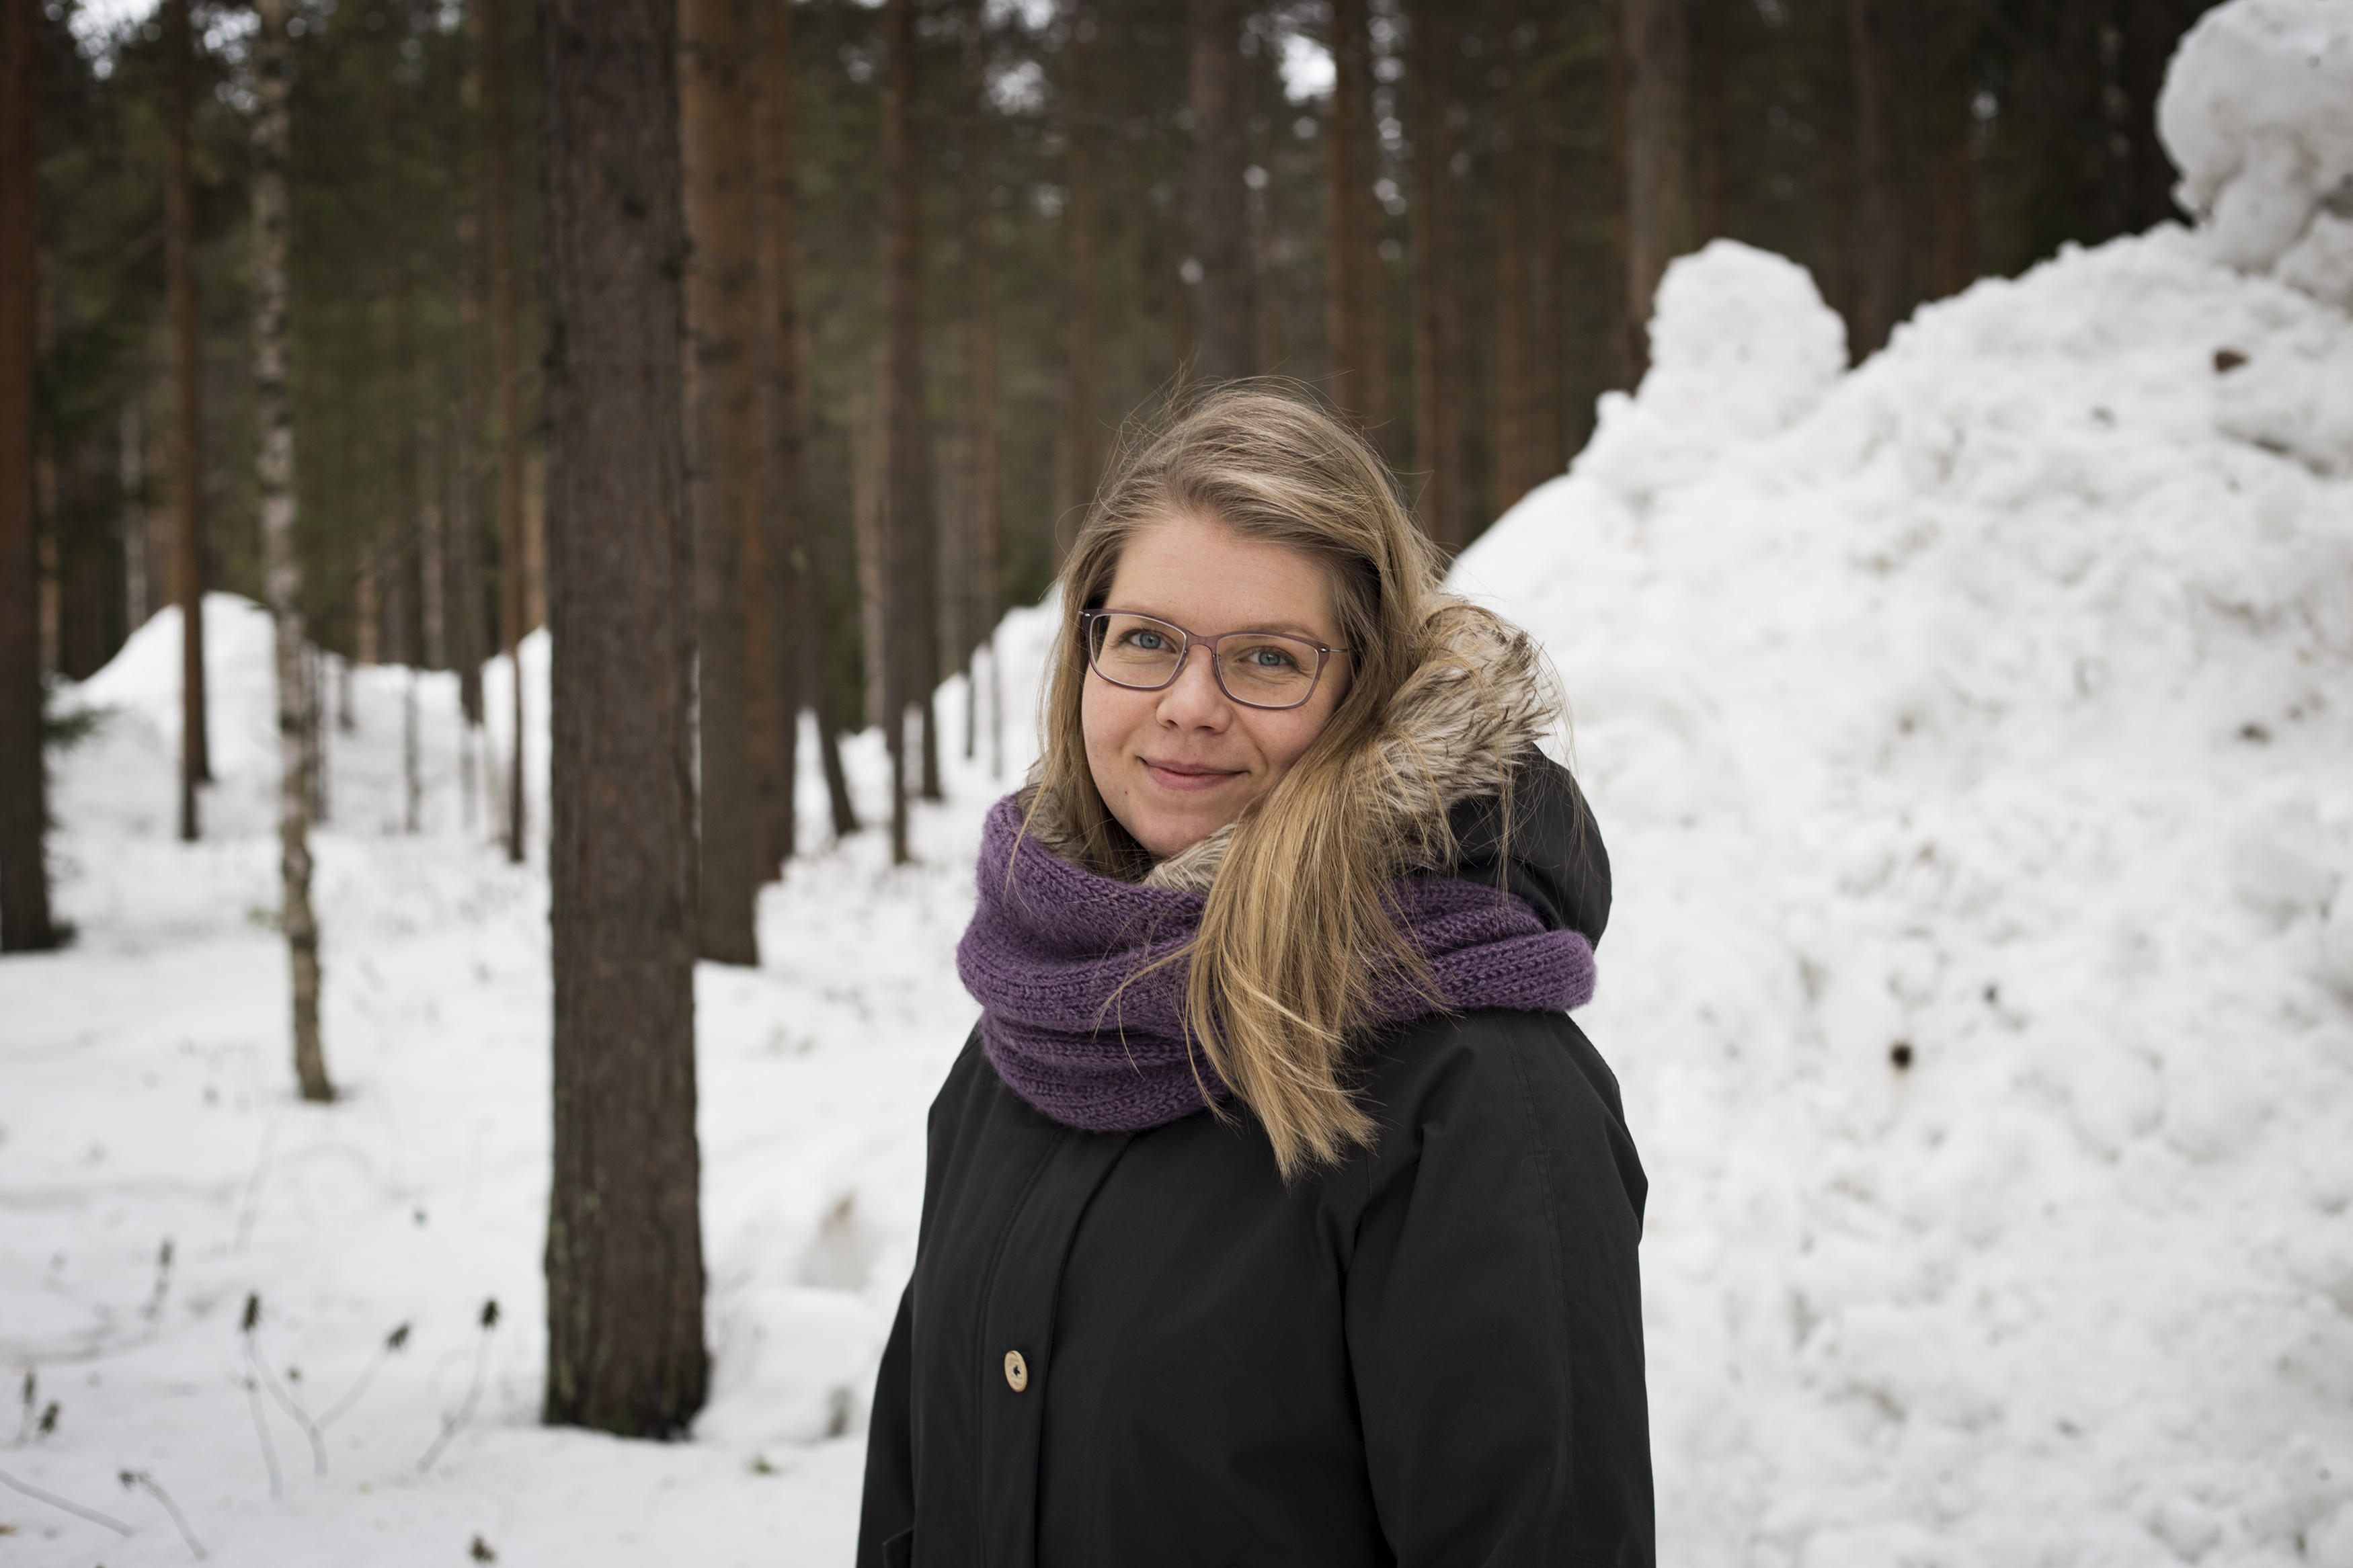 Matkailumaantieteen väitökirjassaan Outi Kulusjärvi tutkii matkailun kestävyyttä pohjoisen matkailuyrittäjien näkökulmasta. Hän uskoo, että ekologisesti kestävä matkailu voi olla mahdollista, vaikkakaan ei vielä tällä hetkellä.